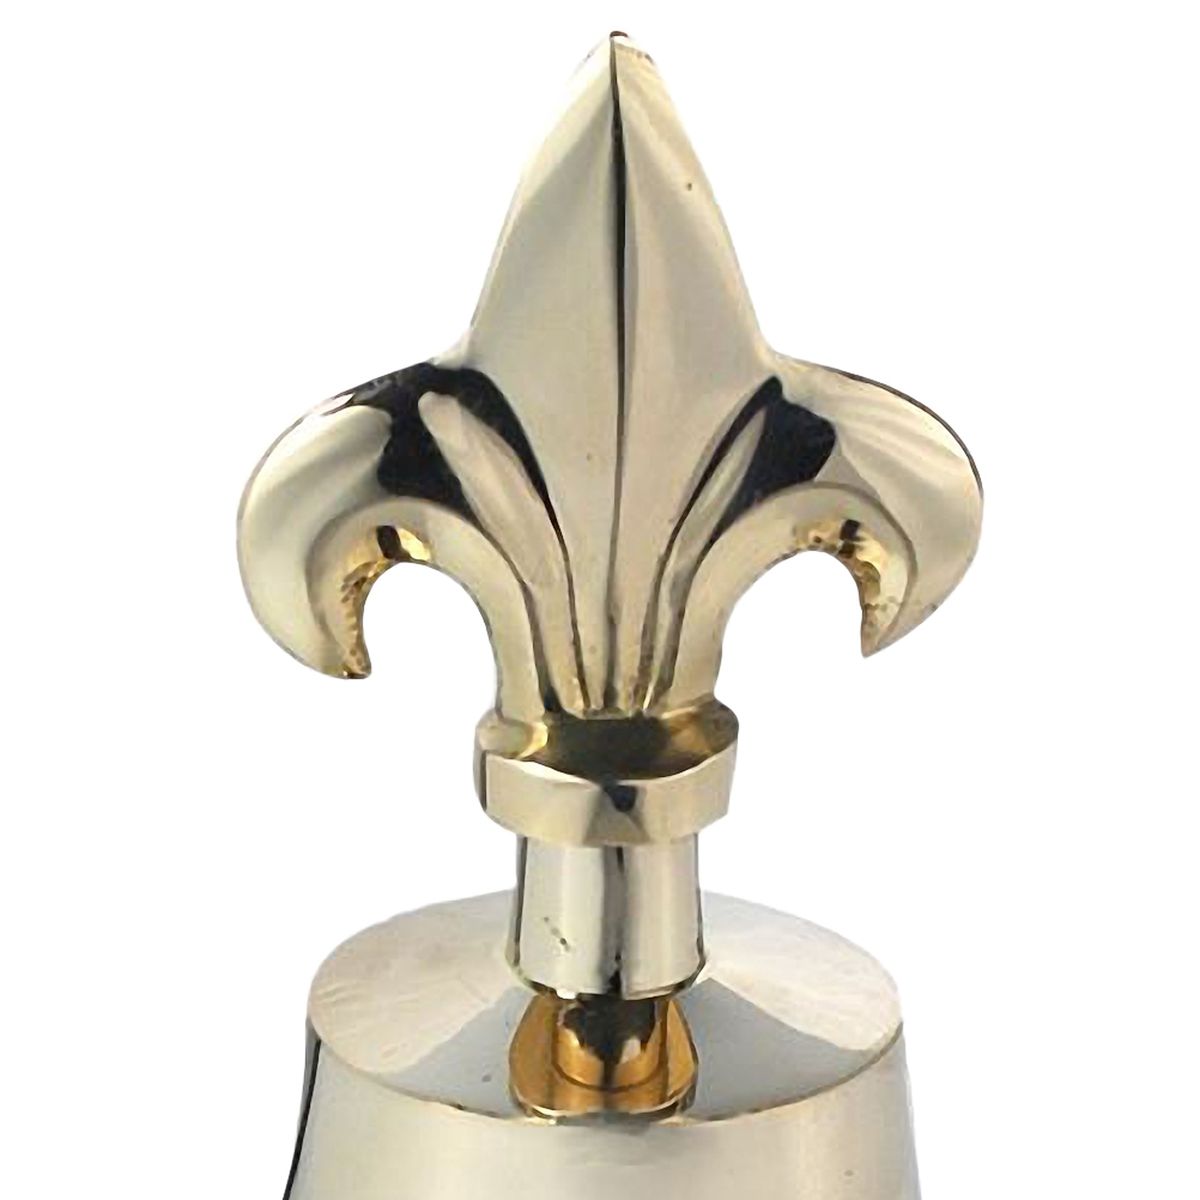 Golden brass bell 15 cm